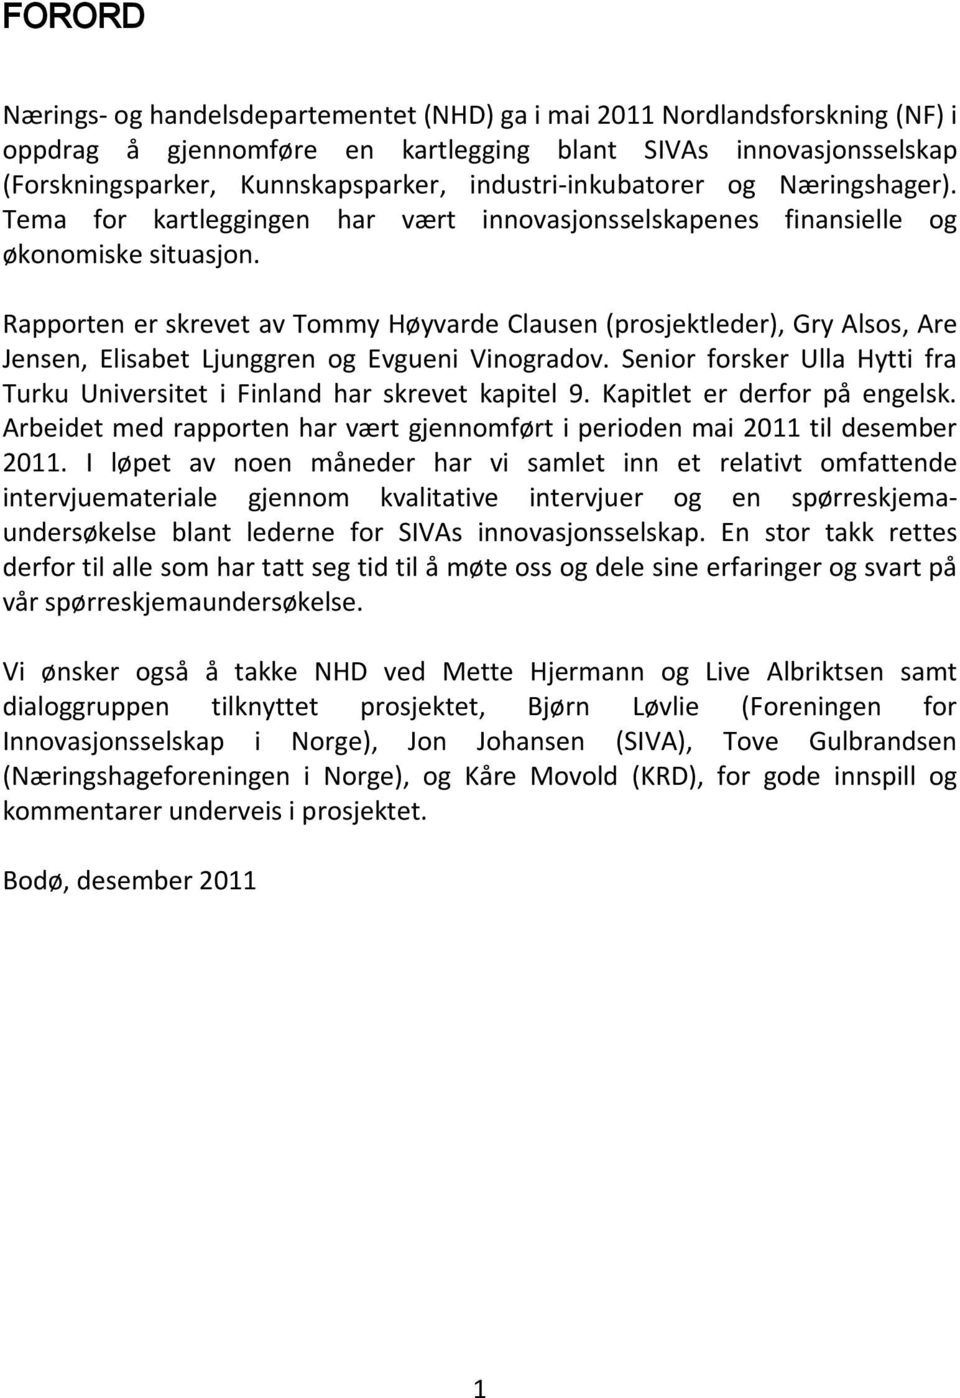 Rapporten er skrevet av Tommy Høyvarde Clausen (prosjektleder), Gry Alsos, Are Jensen, Elisabet Ljunggren og Evgueni Vinogradov.